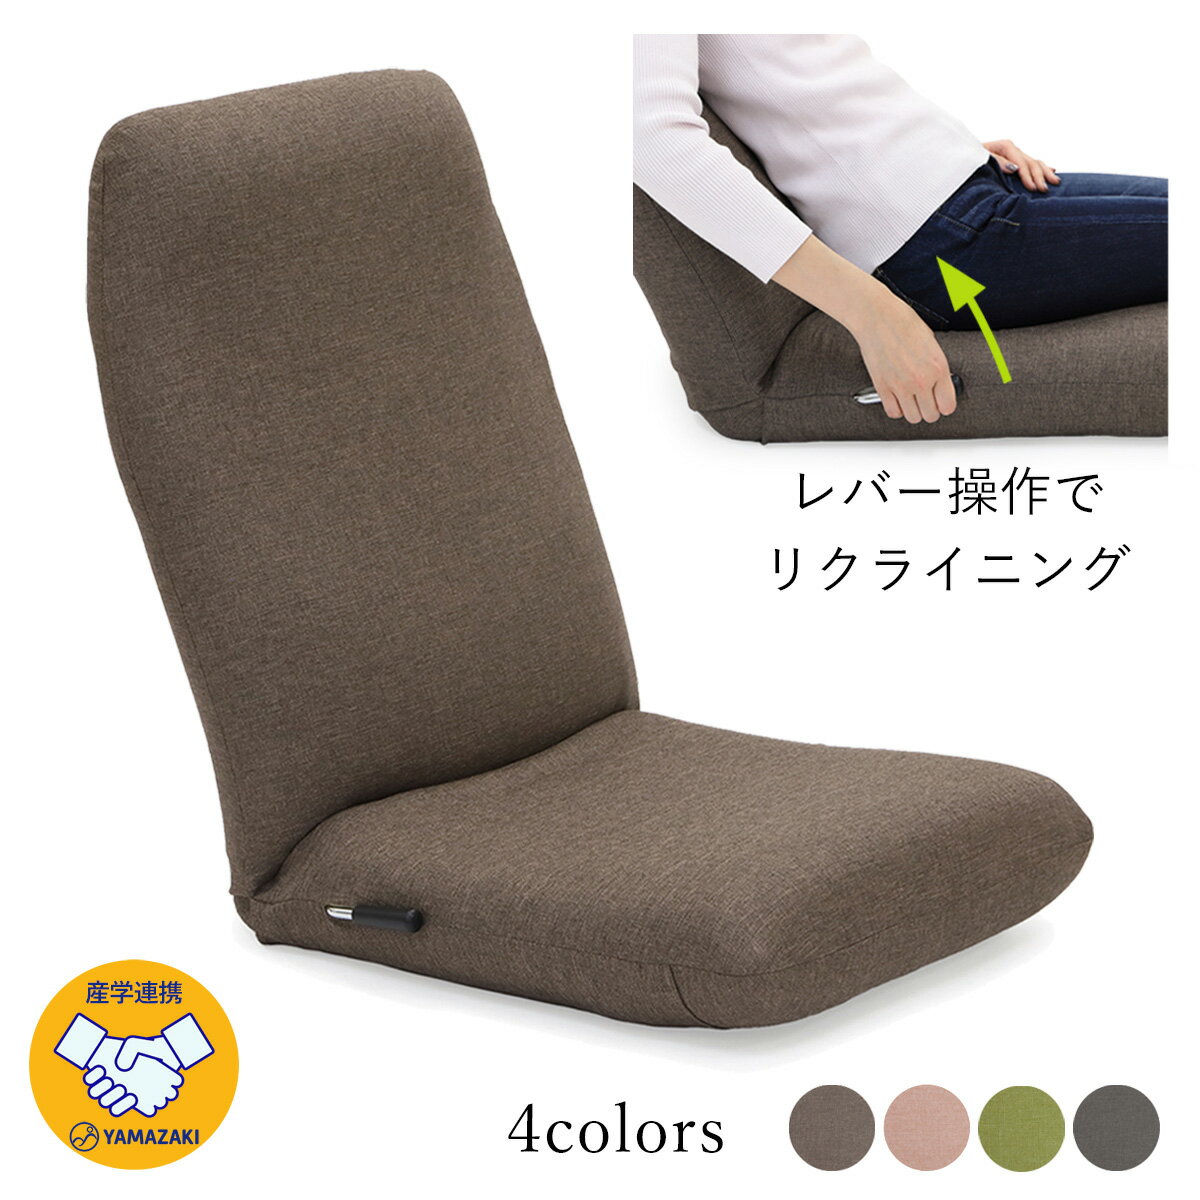 産学連携 レバー式ハイバック座椅子 18hb-lv(ヤマザキ) 【 座椅子 日本製 リクライニング レバー レバー式 姿勢 ざいす 座いす 】